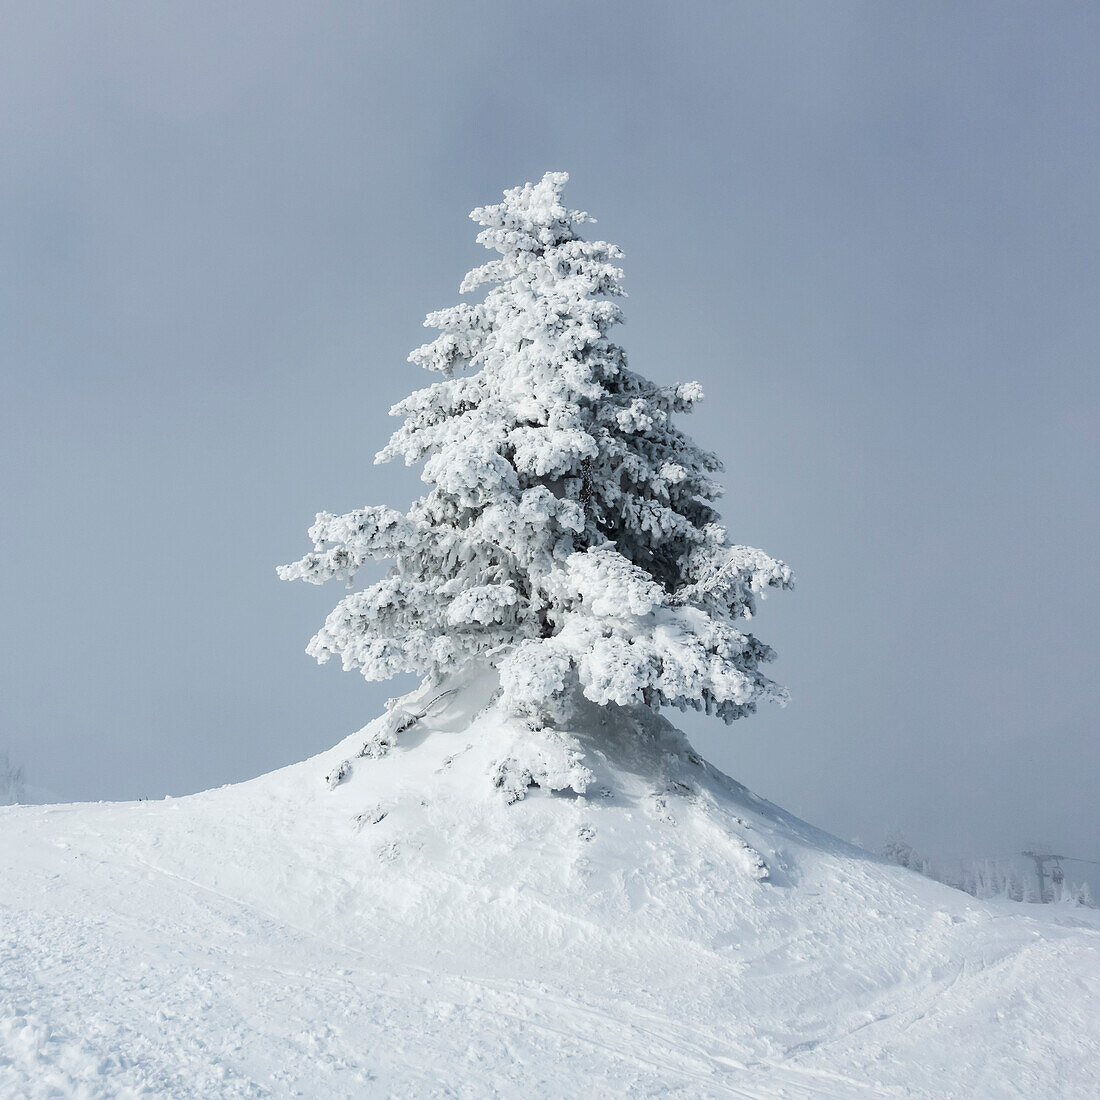 Schneebedeckter Baum vor blauem Himmel auf einem Skihügel, Sun Peaks Ski Resort; British Columbia, Kanada